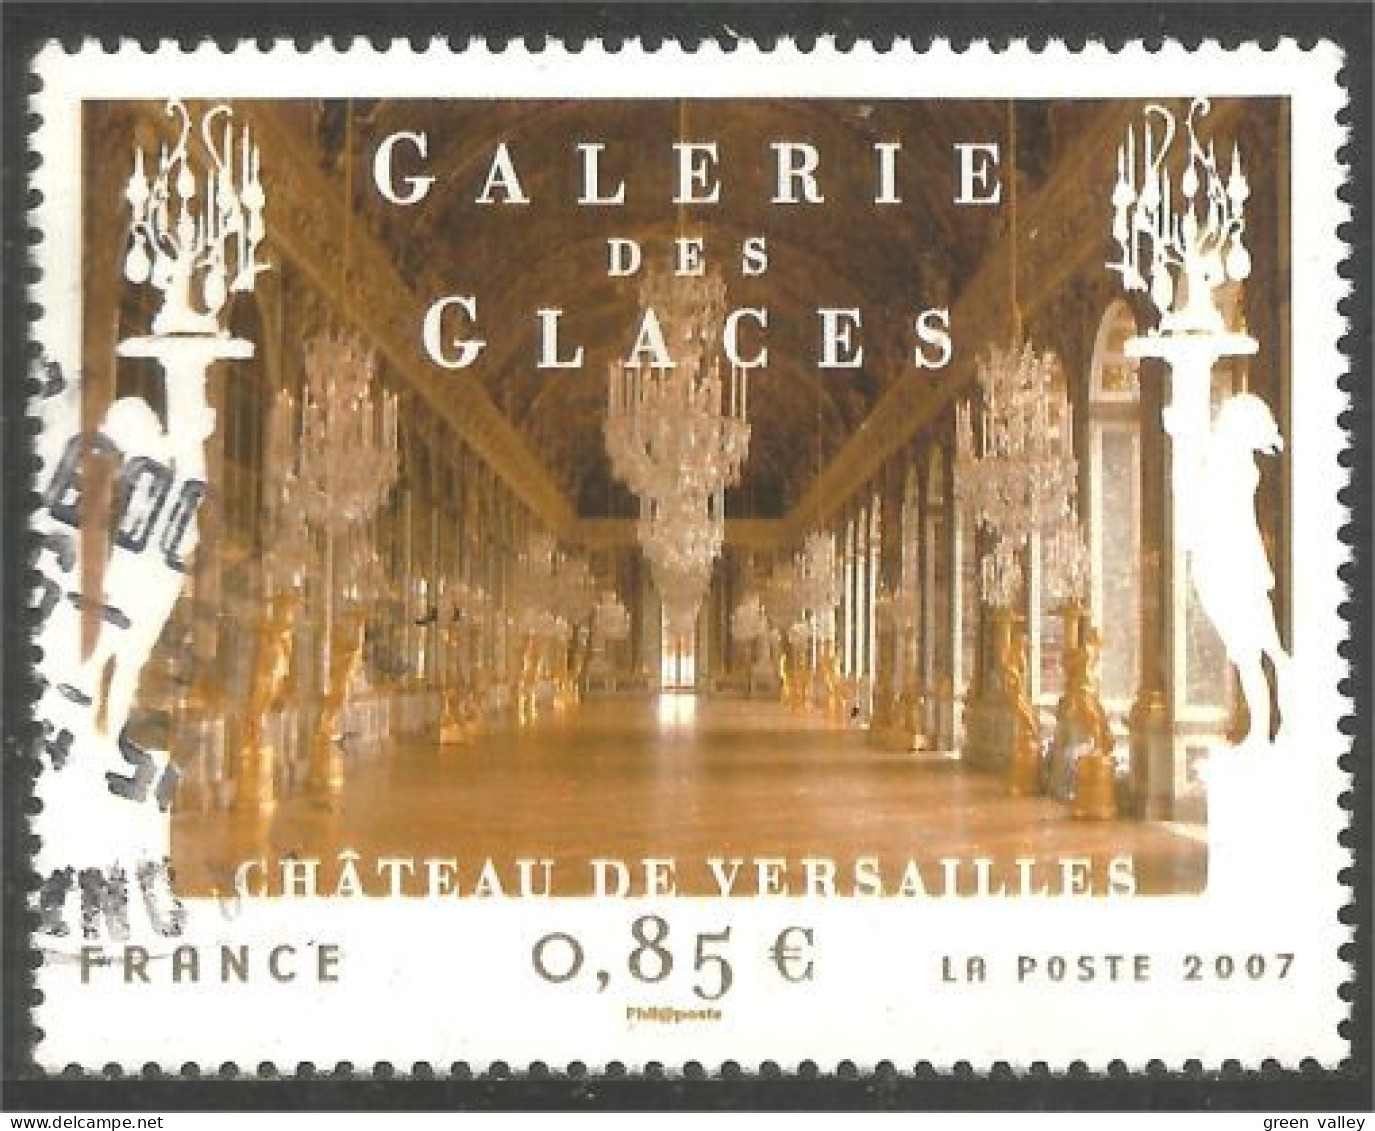 331eu-99 France Galeirie Glaces Chateau Versailles Castle Caslello - Oblitérés